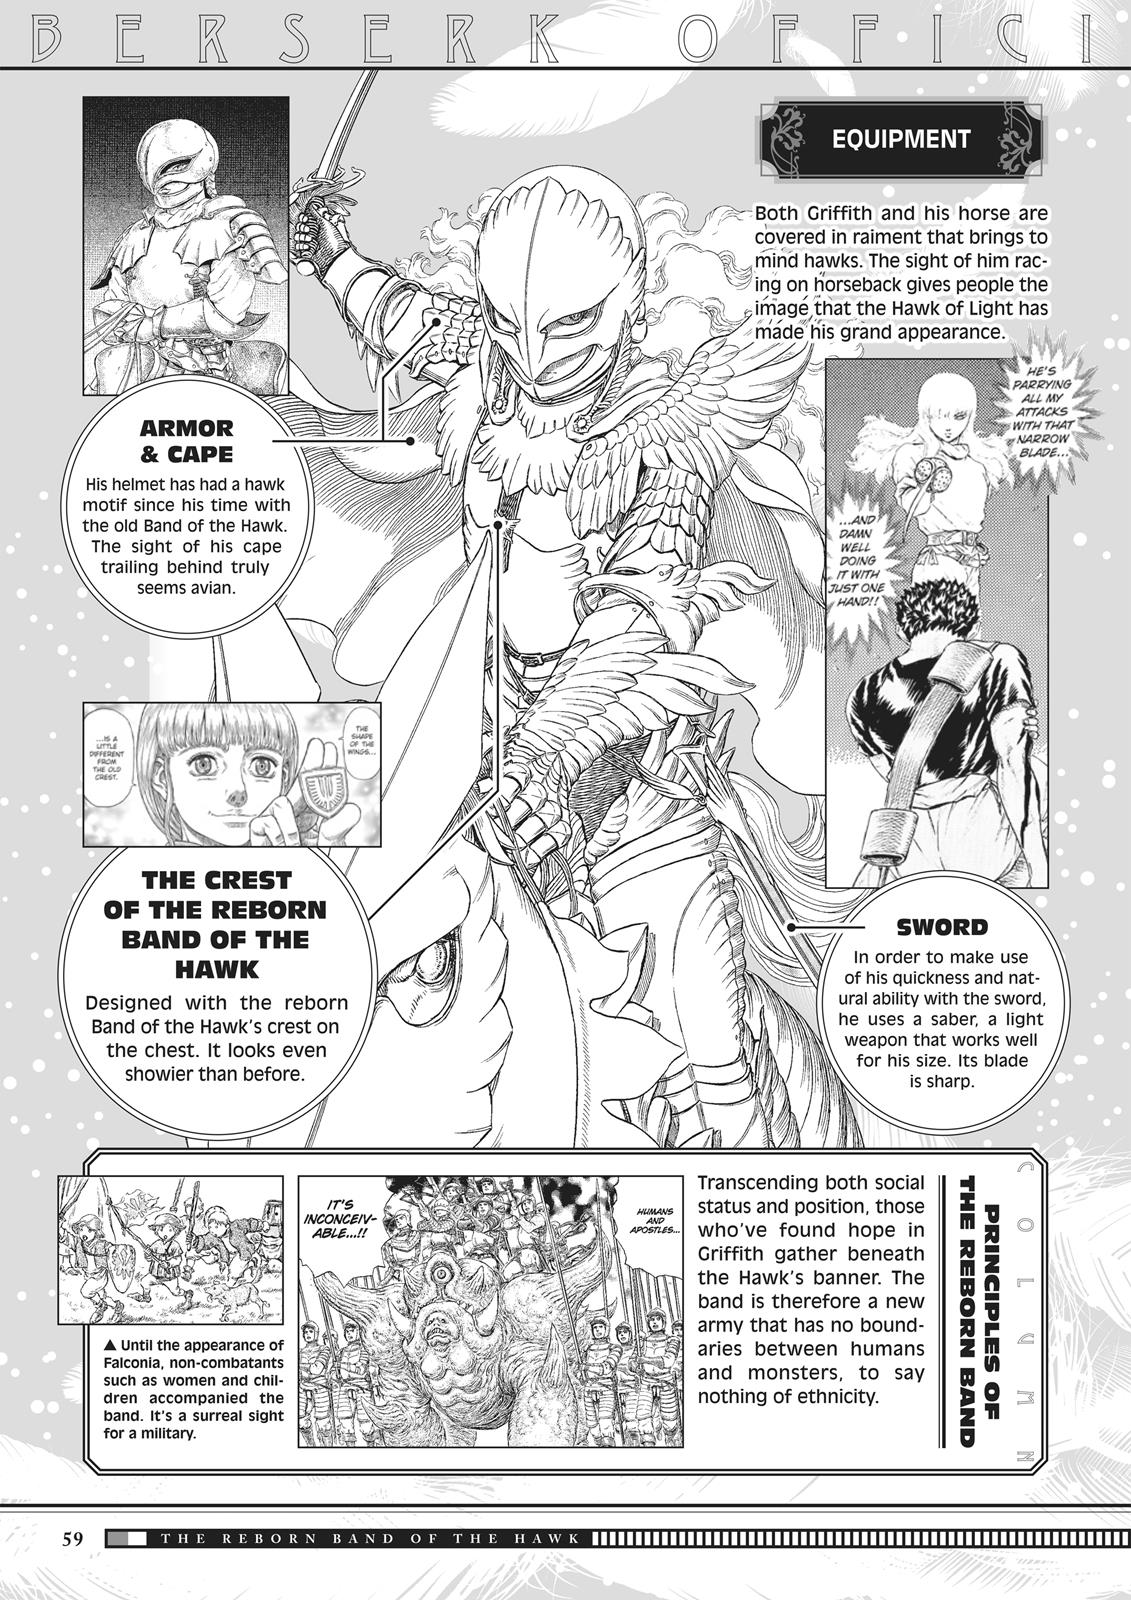 Berserk Manga Chapter 350.5 image 058